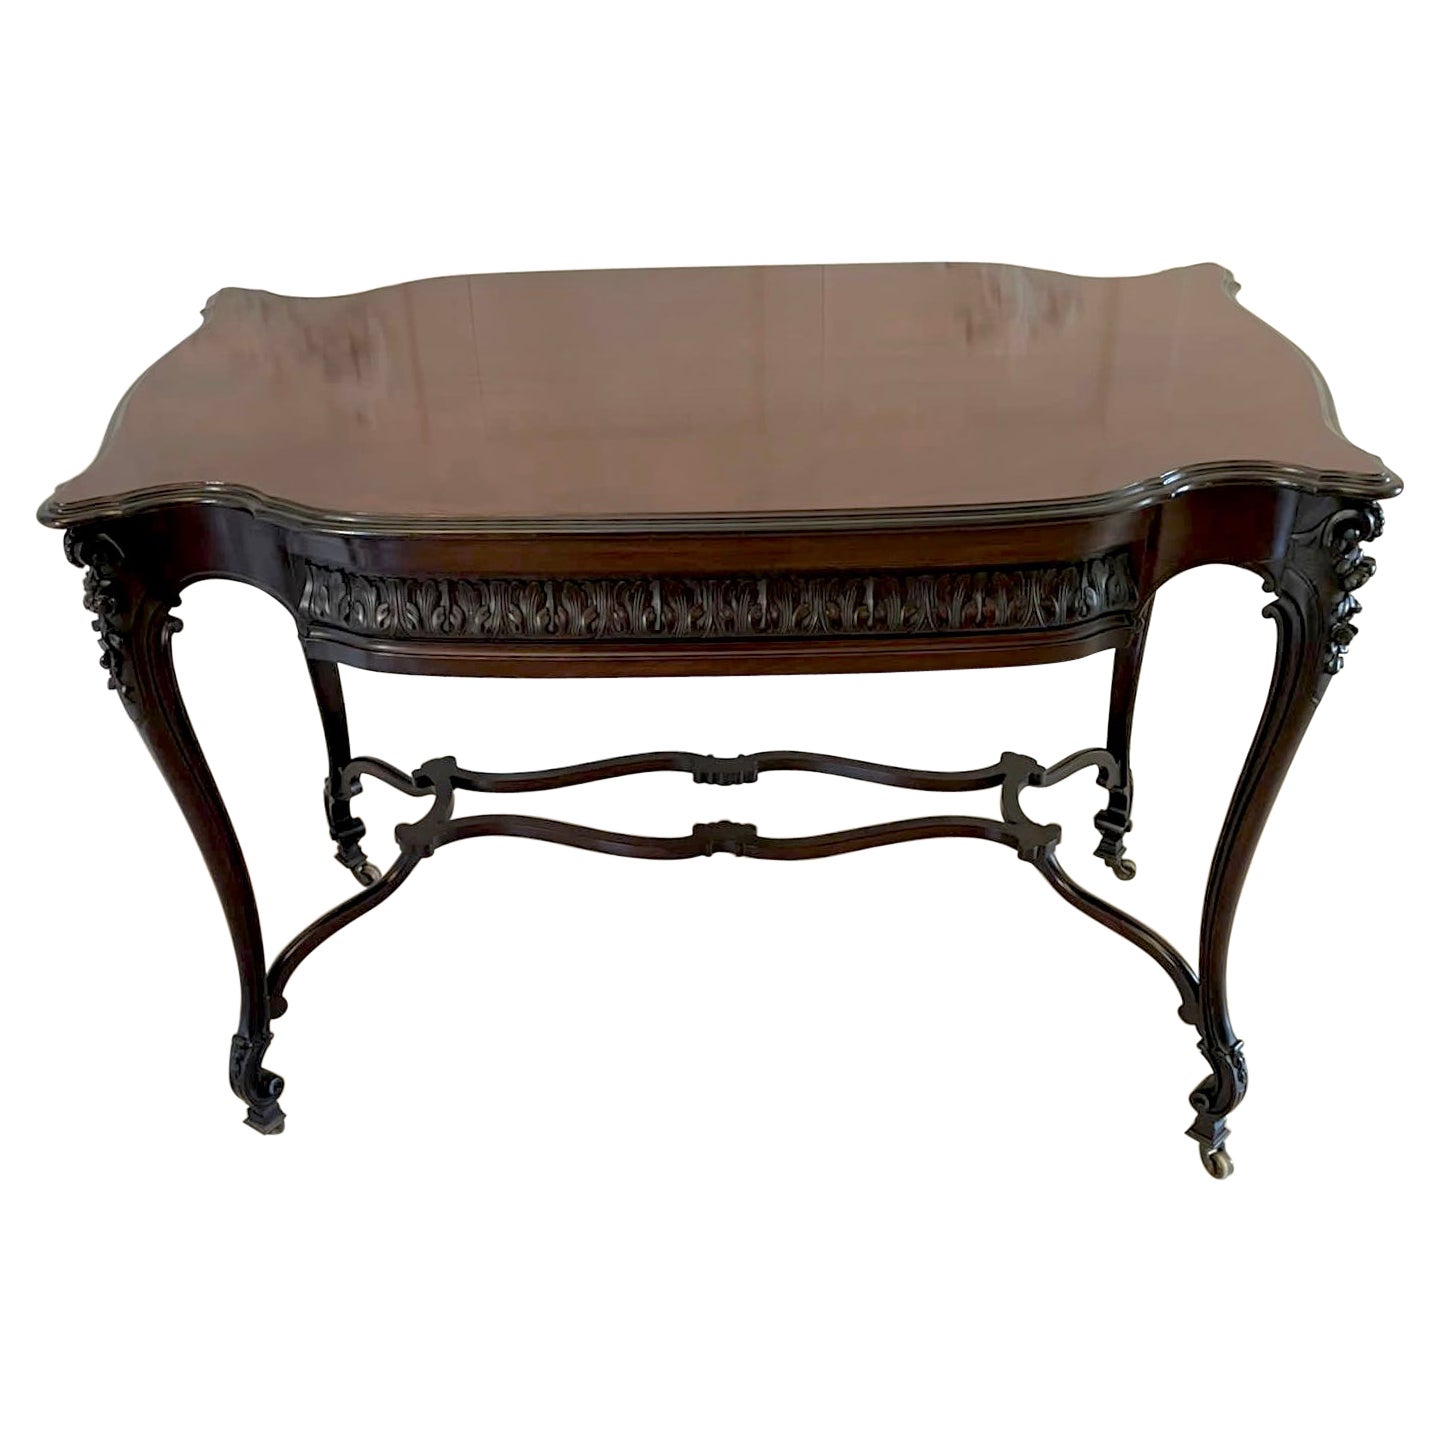  Table centrale autoportante en acajou sculpt d'poque victorienne de qualit exceptionnelle